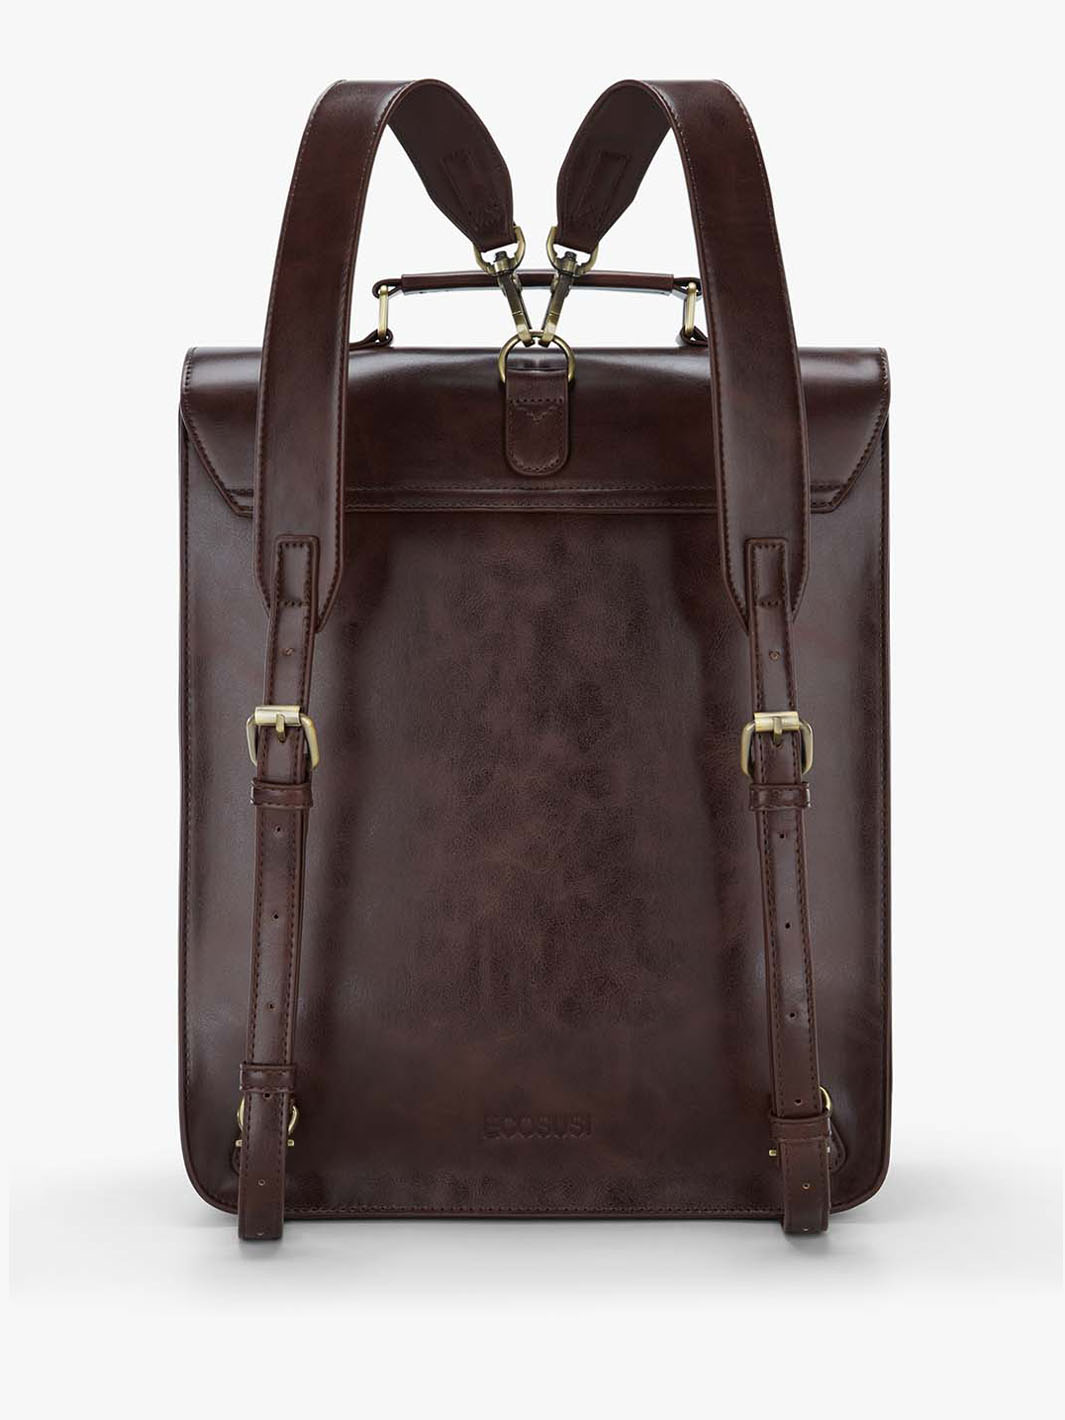 Leather backpack handbag for Women: Ecosusi Vintage Backpack